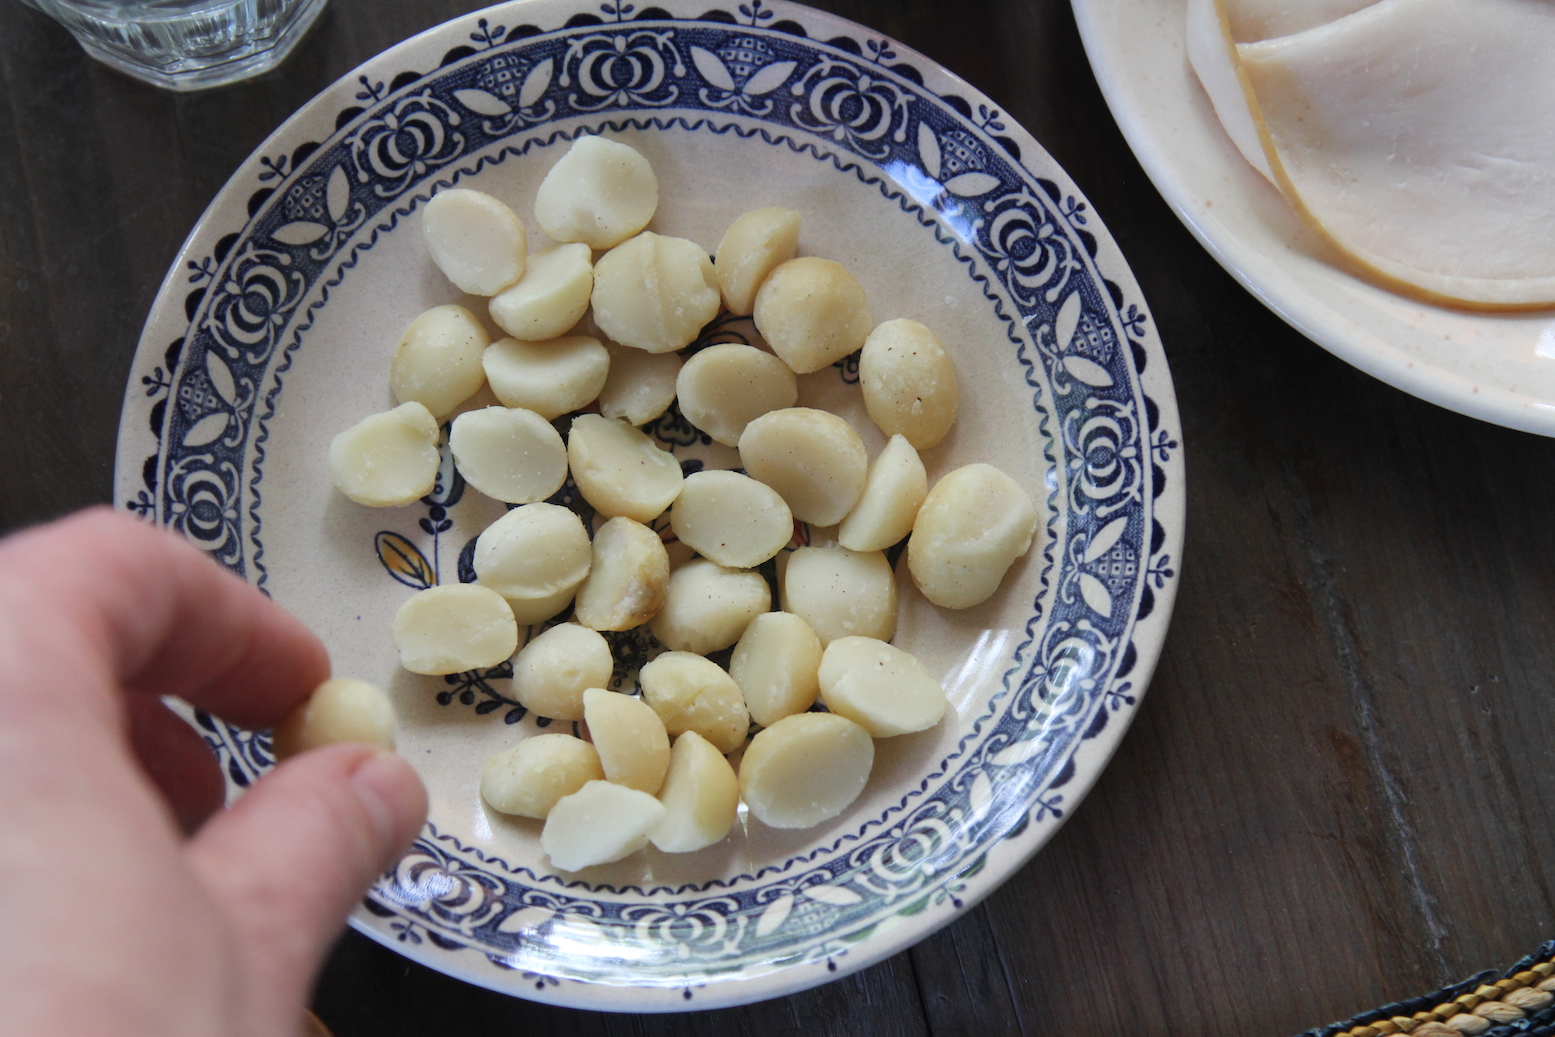 10 things that spark joy - macadamia nut (c)nwafoodie